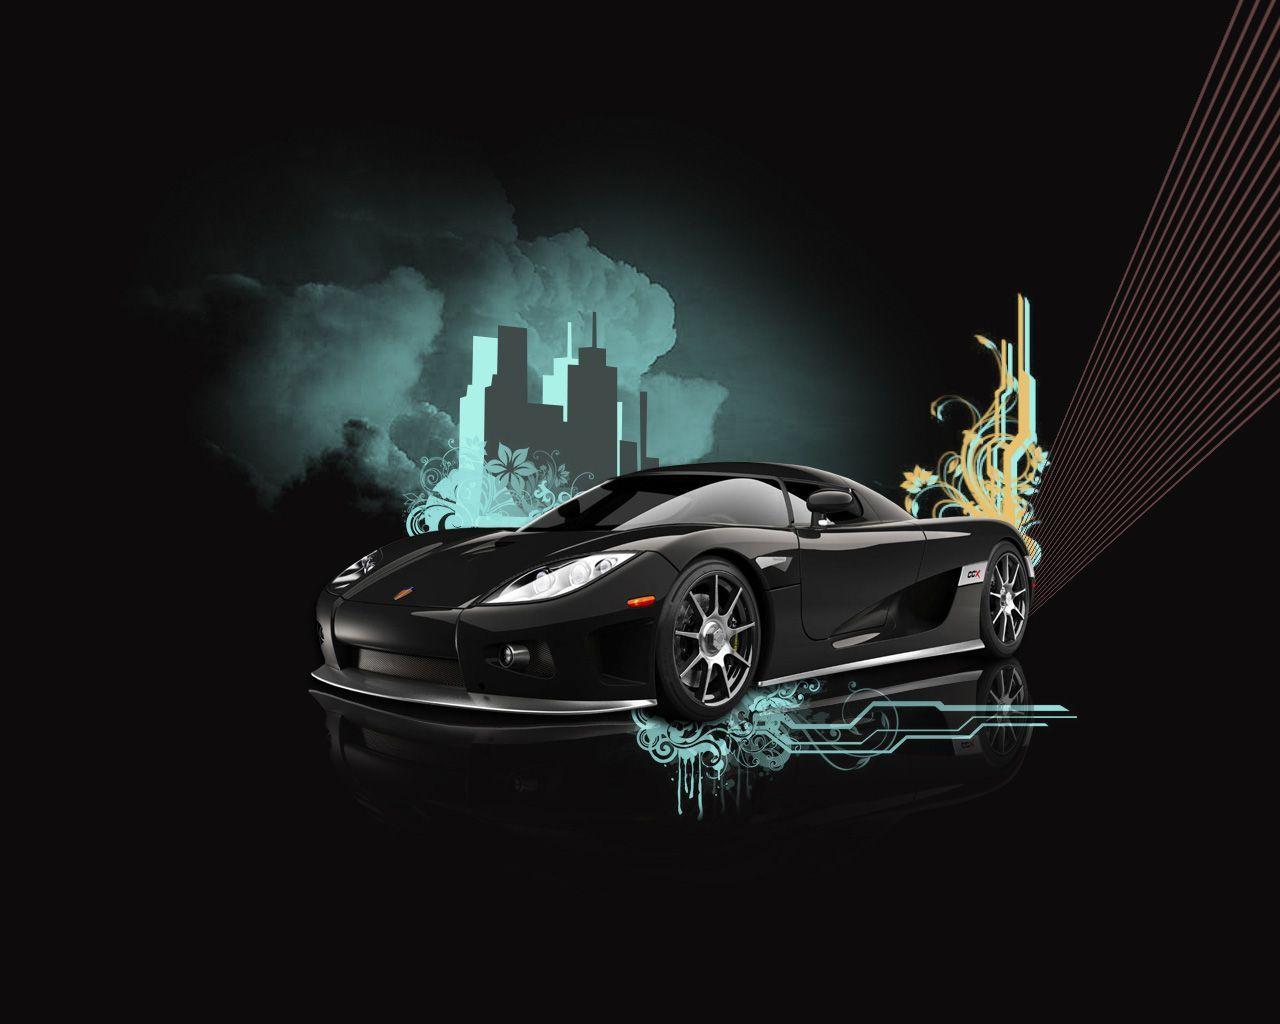 Desktop Wallpaper Motors Cars Koenigsegg Ccxr Free. Cars Gallery